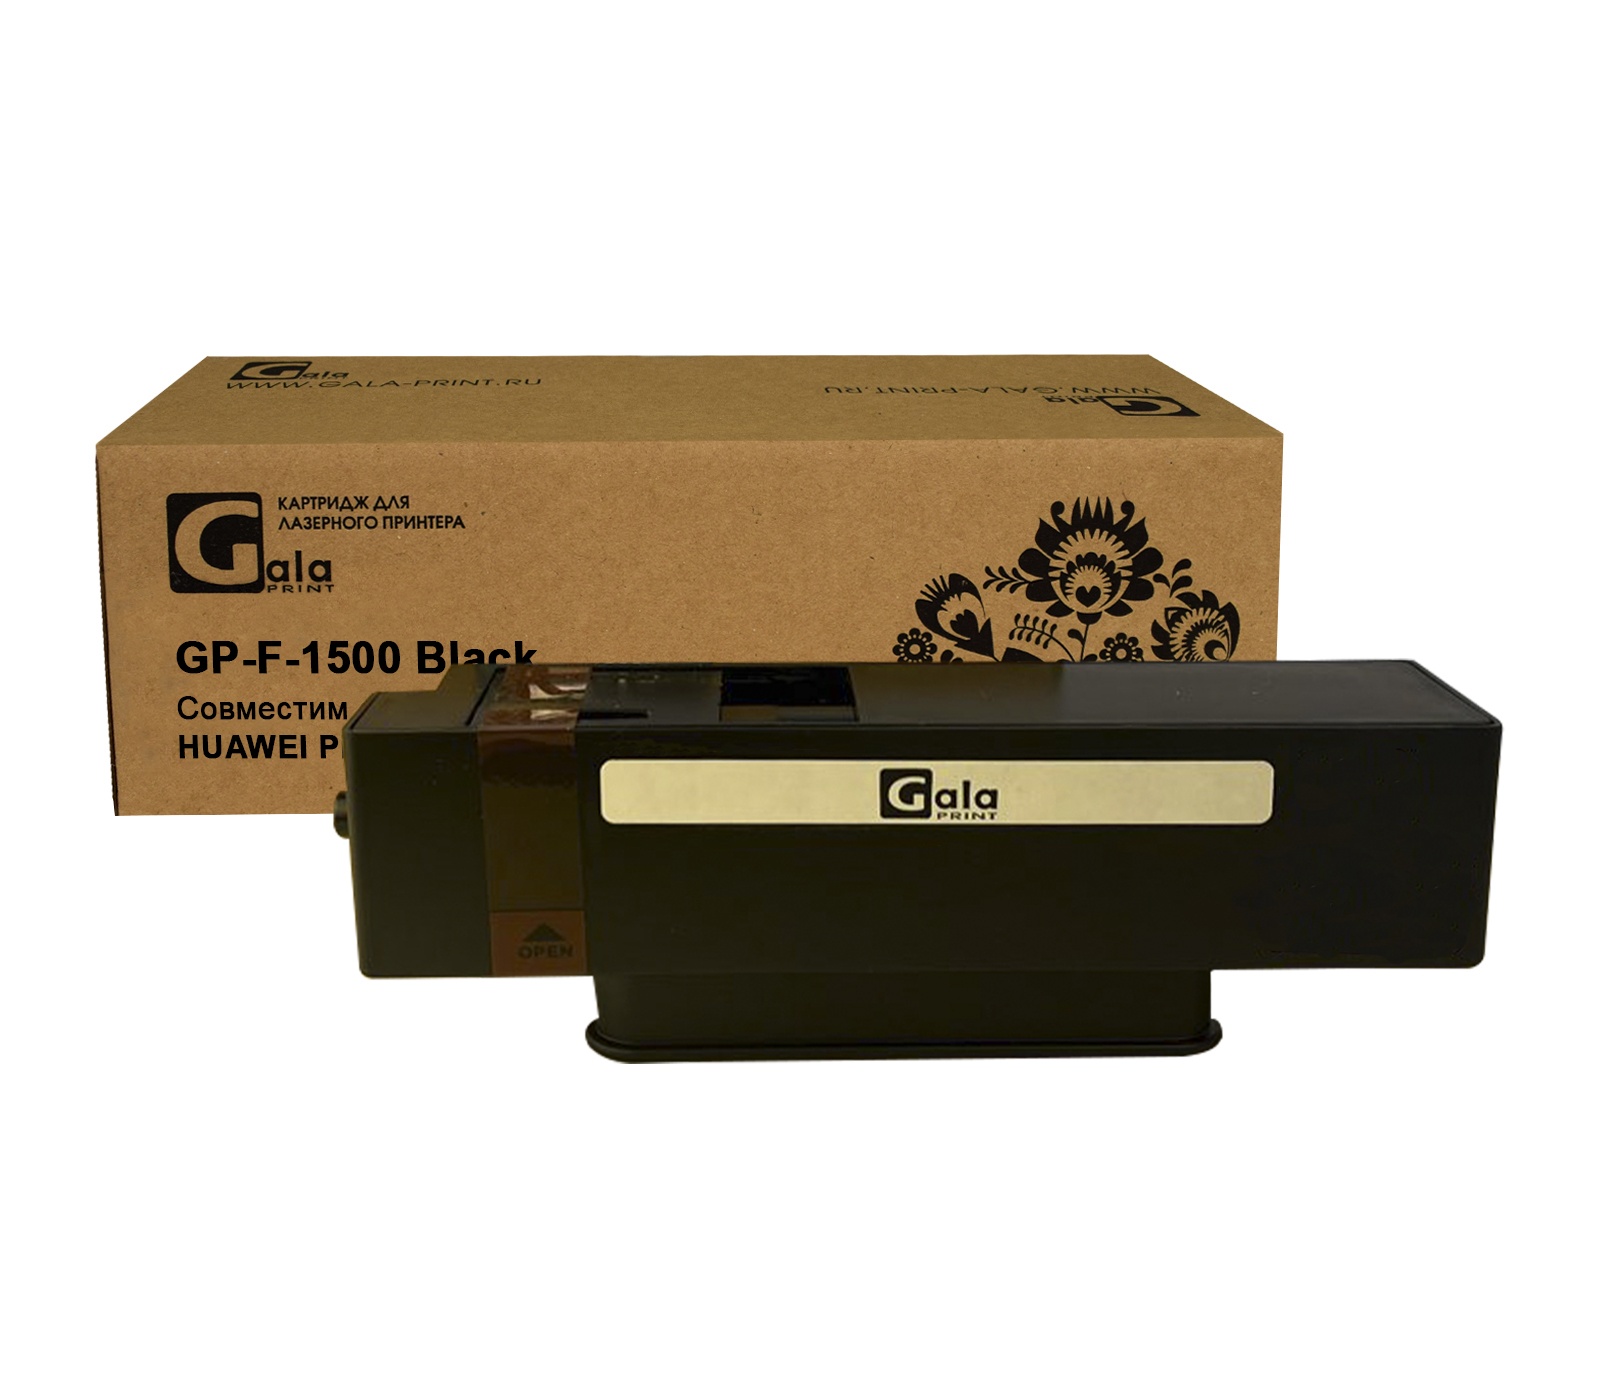 Картридж GP-F-1500 для принтеров HUAWEI PixLab X1/B5 Black 1500 копий GalaPrint